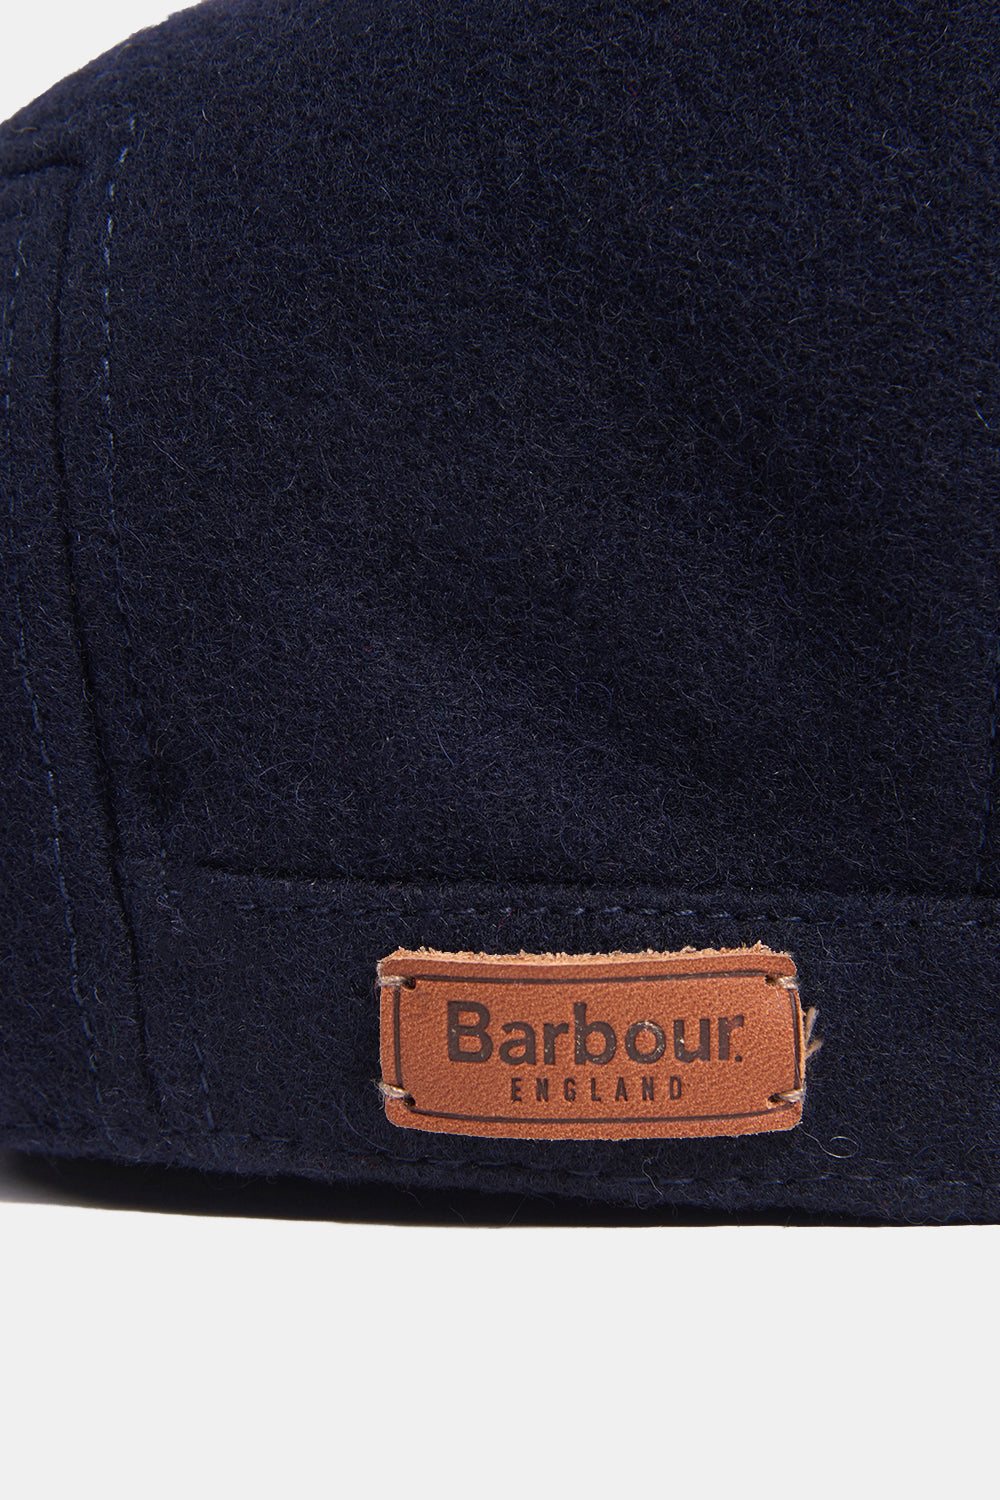 Barbour Redshore Flat Cap (Navy)